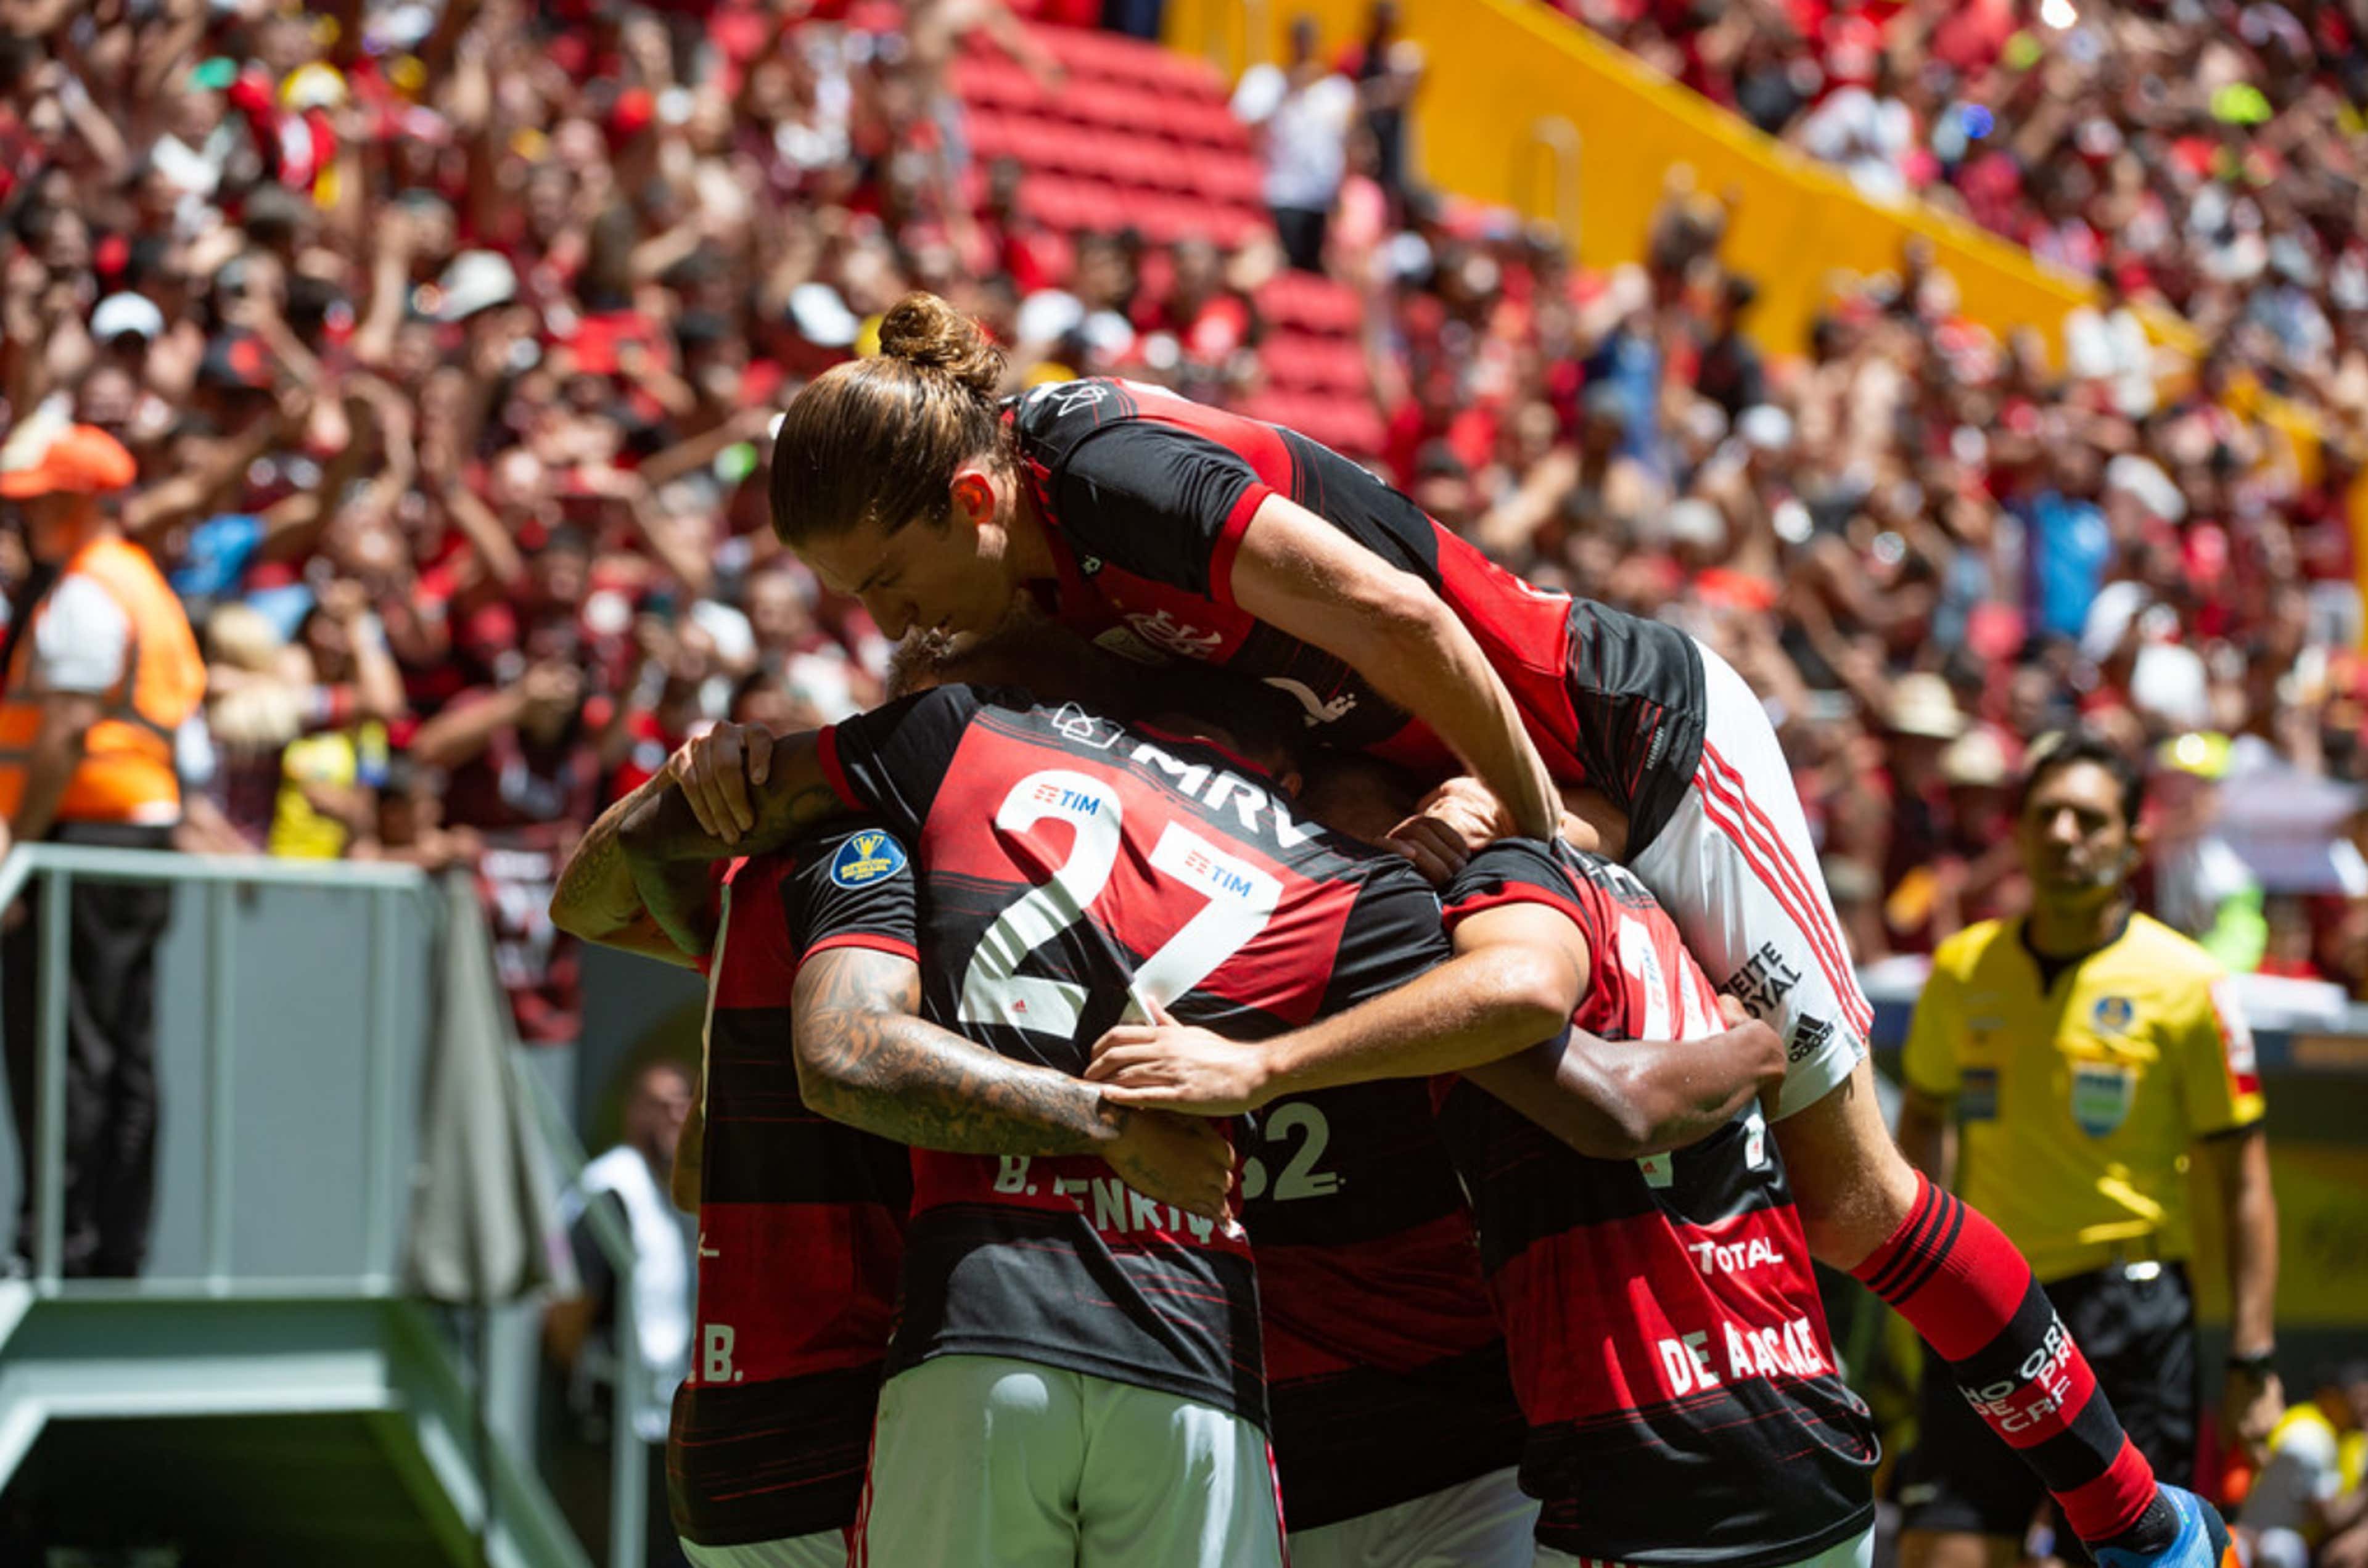 ONDE ESTÁ PASSANDO O JOGO DO FLAMENGO? Assista Flamengo x Independiente del  Valle AO VIVO E ONLINE GRÁTIS